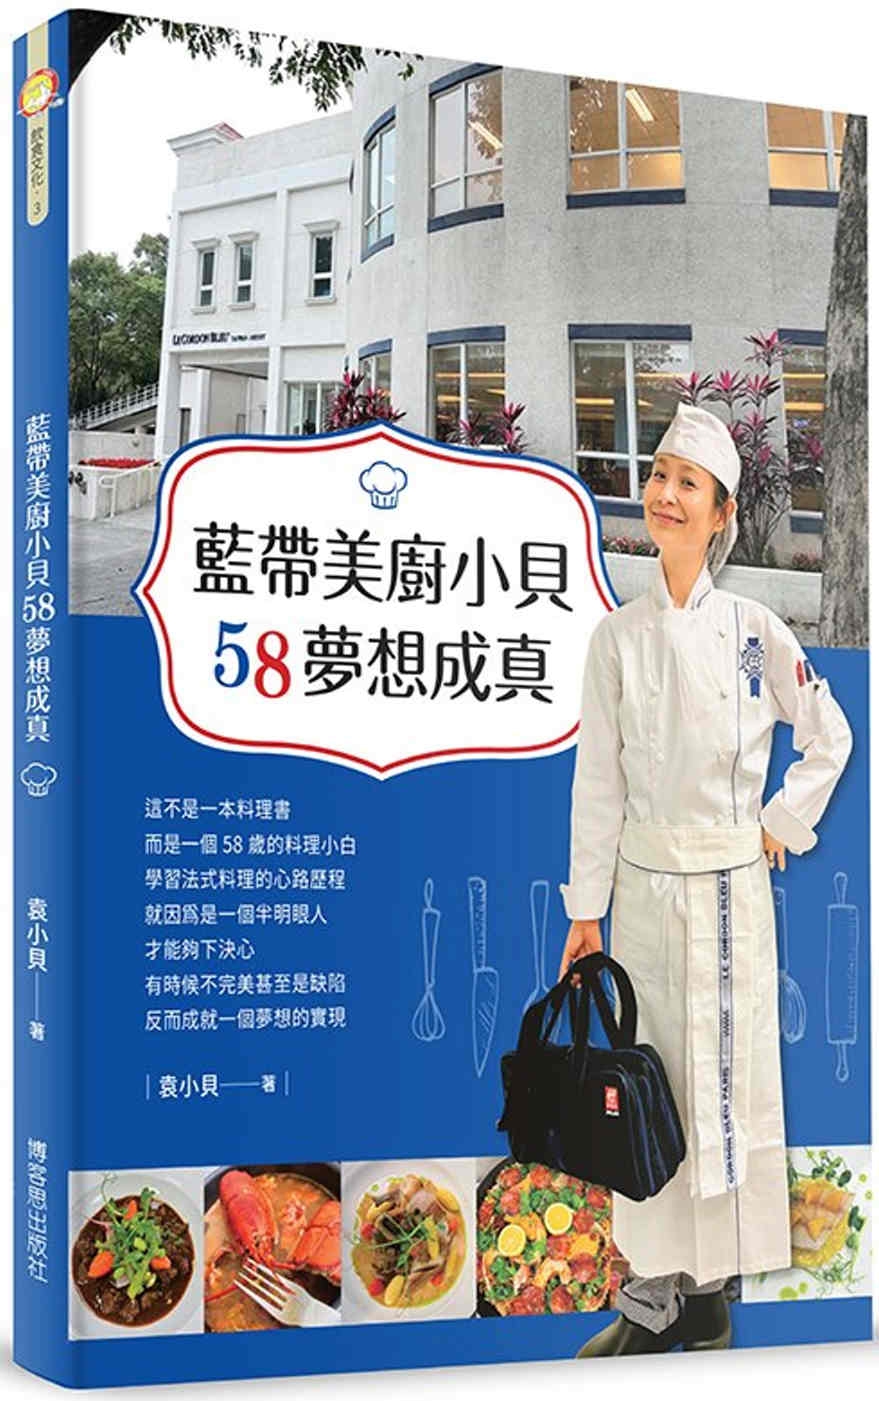 藍帶美廚小貝58夢想成真-學習法式料理的樂趣！：學習法式料理...